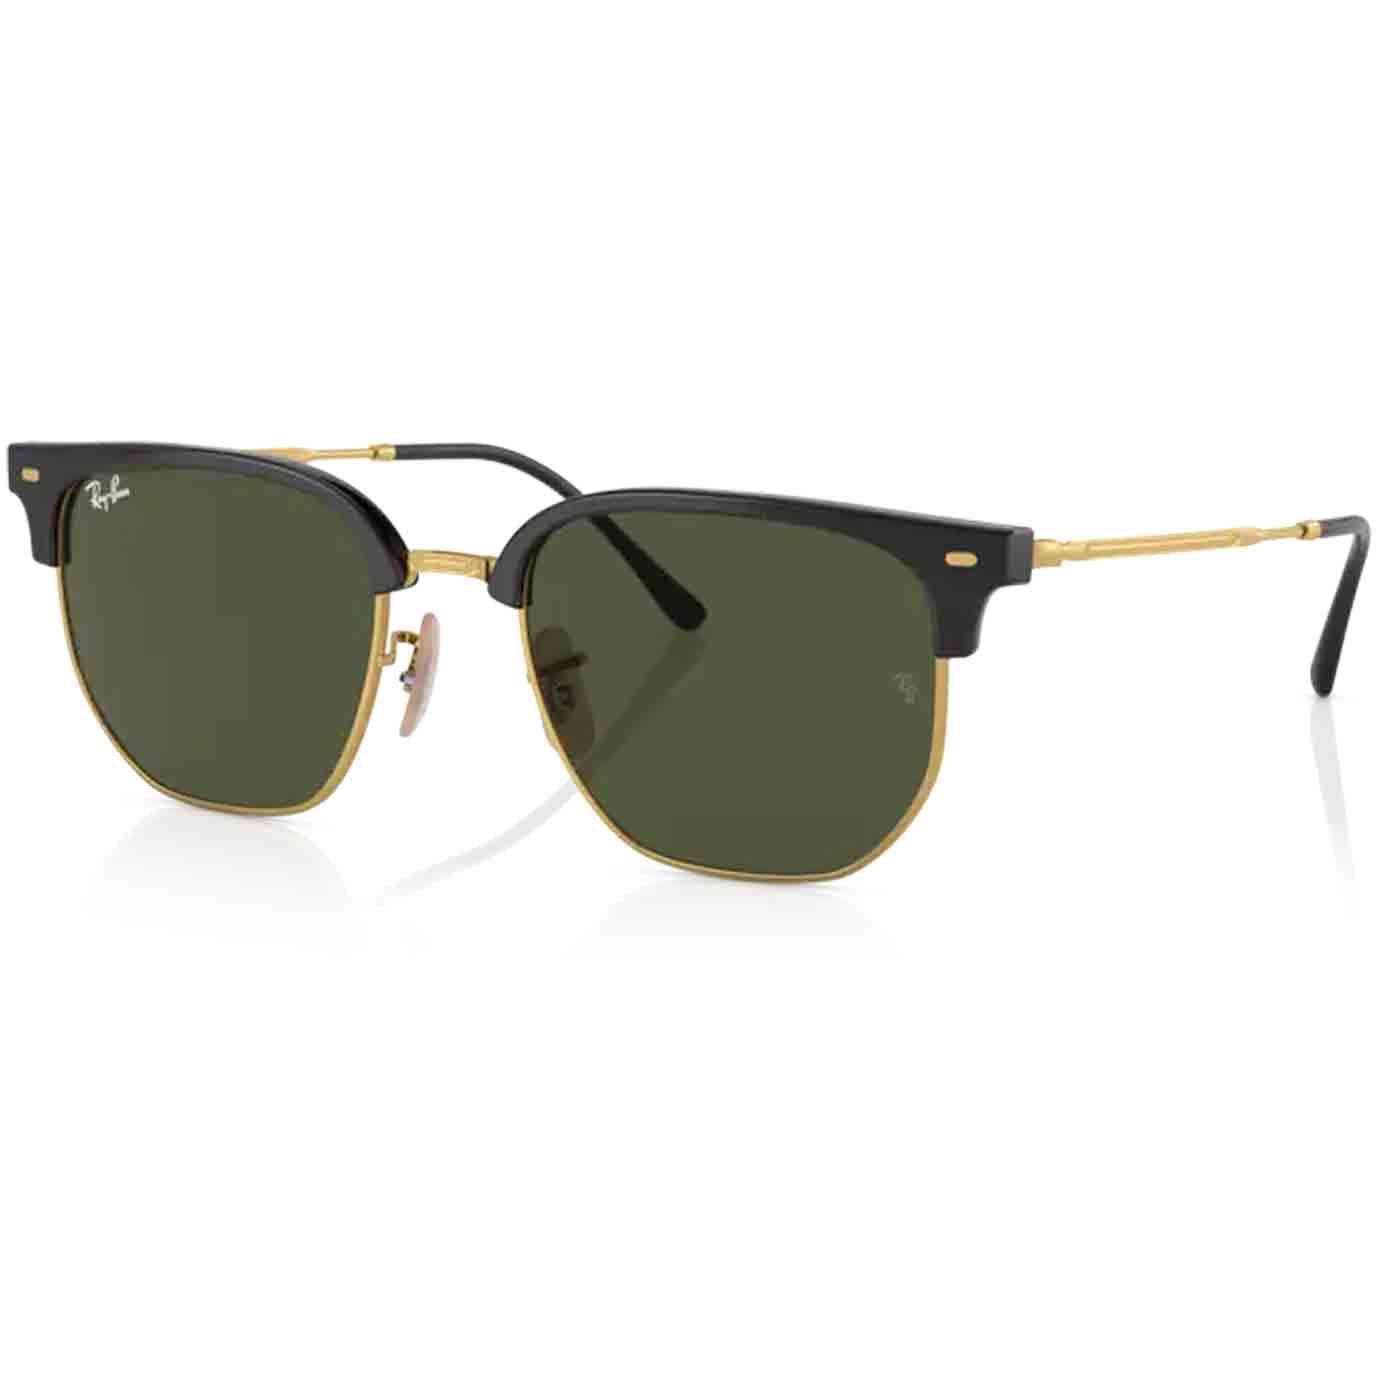 New Clubmaster RAY-BAN Retro Sunglasses Black/Gold